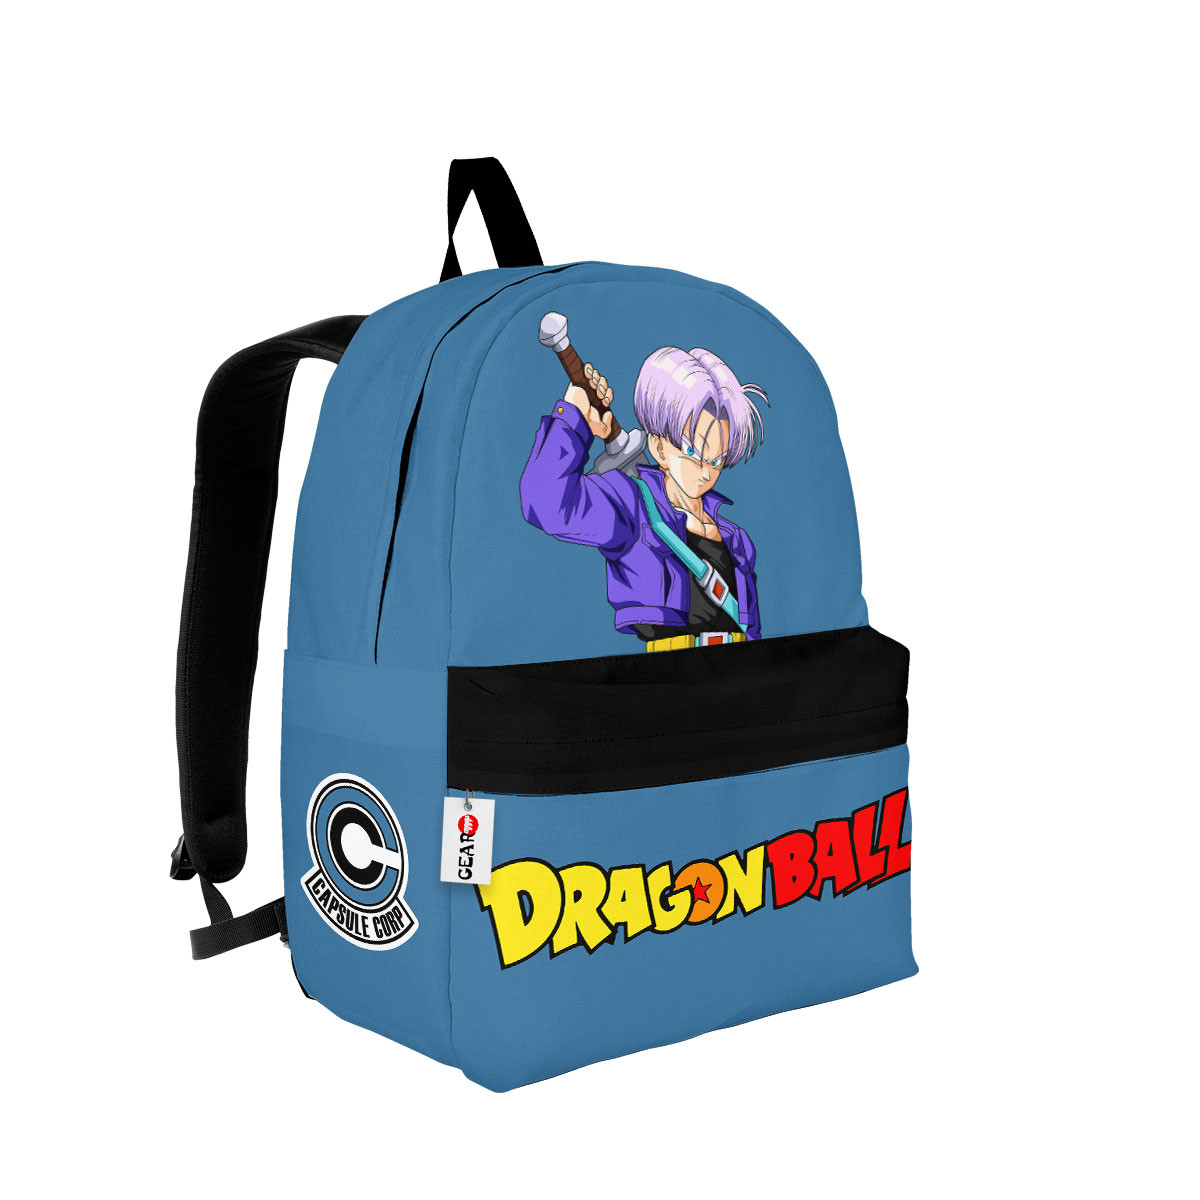 BEST Trunks Dragon Ball Anime Backpack Bag2